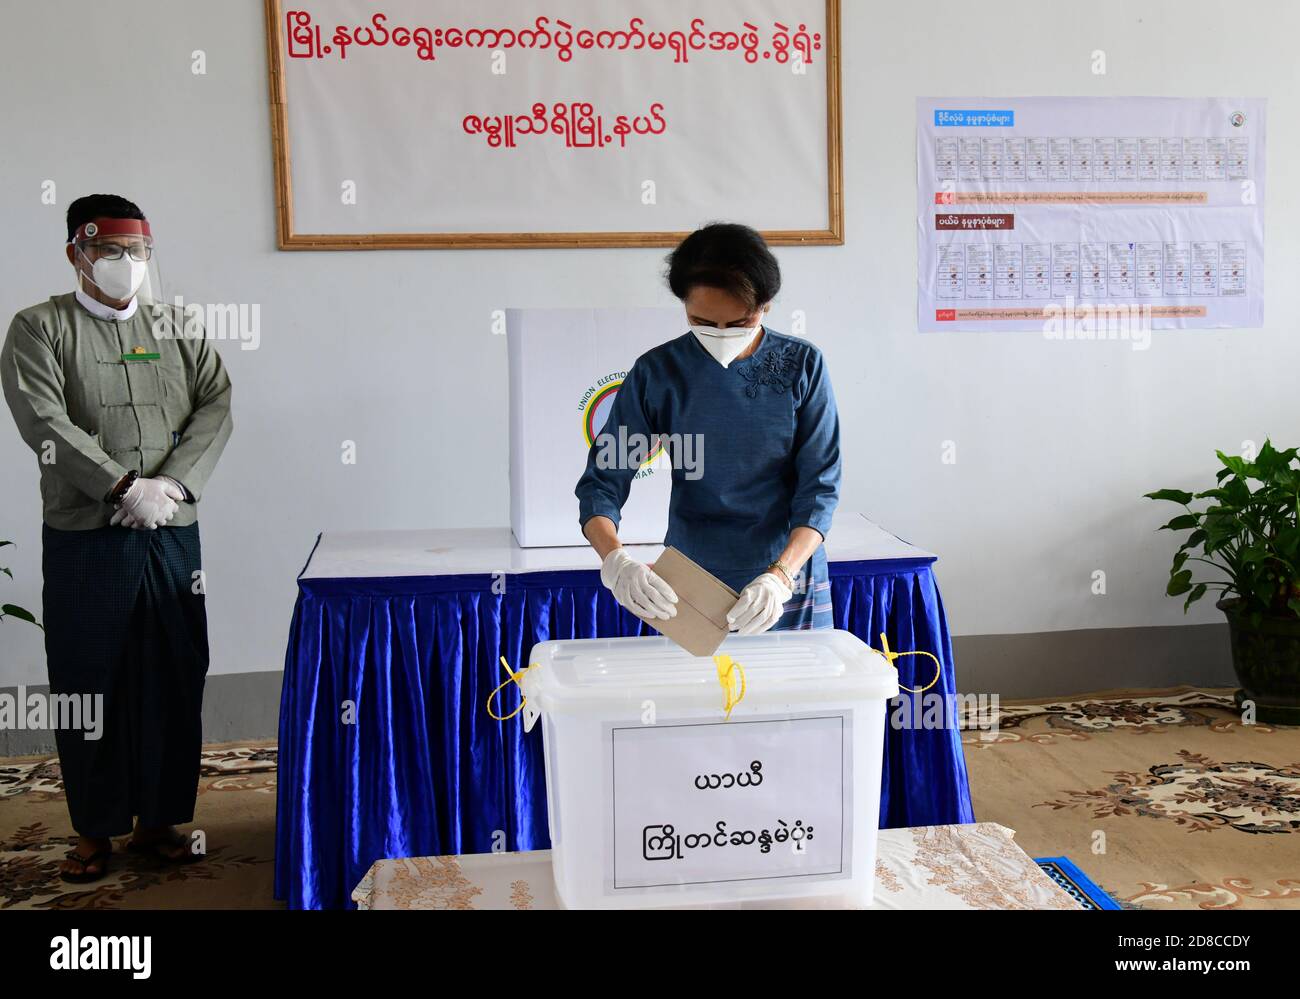 Yangon, Myanmar. 29 octobre 2020. Aung San Suu Kyi, conseillère d'État du Myanmar, vote par anticipation pour les élections générales à Nay Pyi Taw, au Myanmar, le 29 octobre 2020. Le président du Myanmar U Win Myint et le conseiller d'État Aung San Suu Kyi ont voté par anticipation jeudi pour les élections générales prévues le 8 novembre. (Ministère de l'information/document via Xinhua) crédit: Xinhua/Alay Live News Banque D'Images